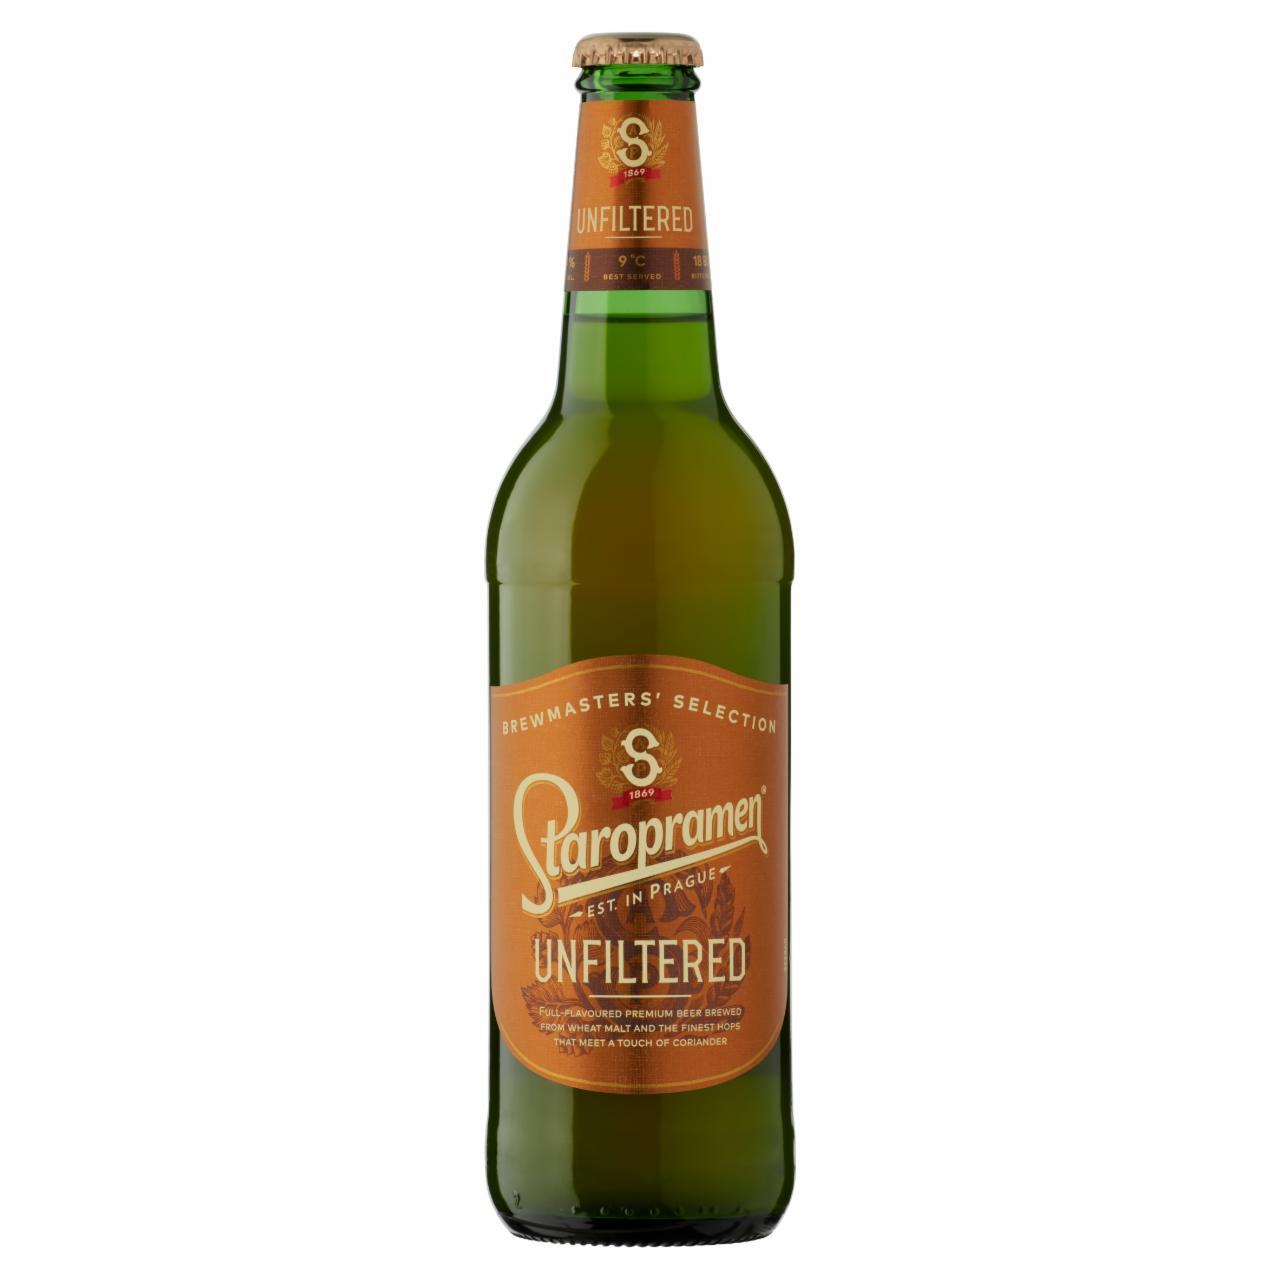 Képek - Staropramen Unfiltered minőségi világos, szűretlen sör 5% 0,5 l